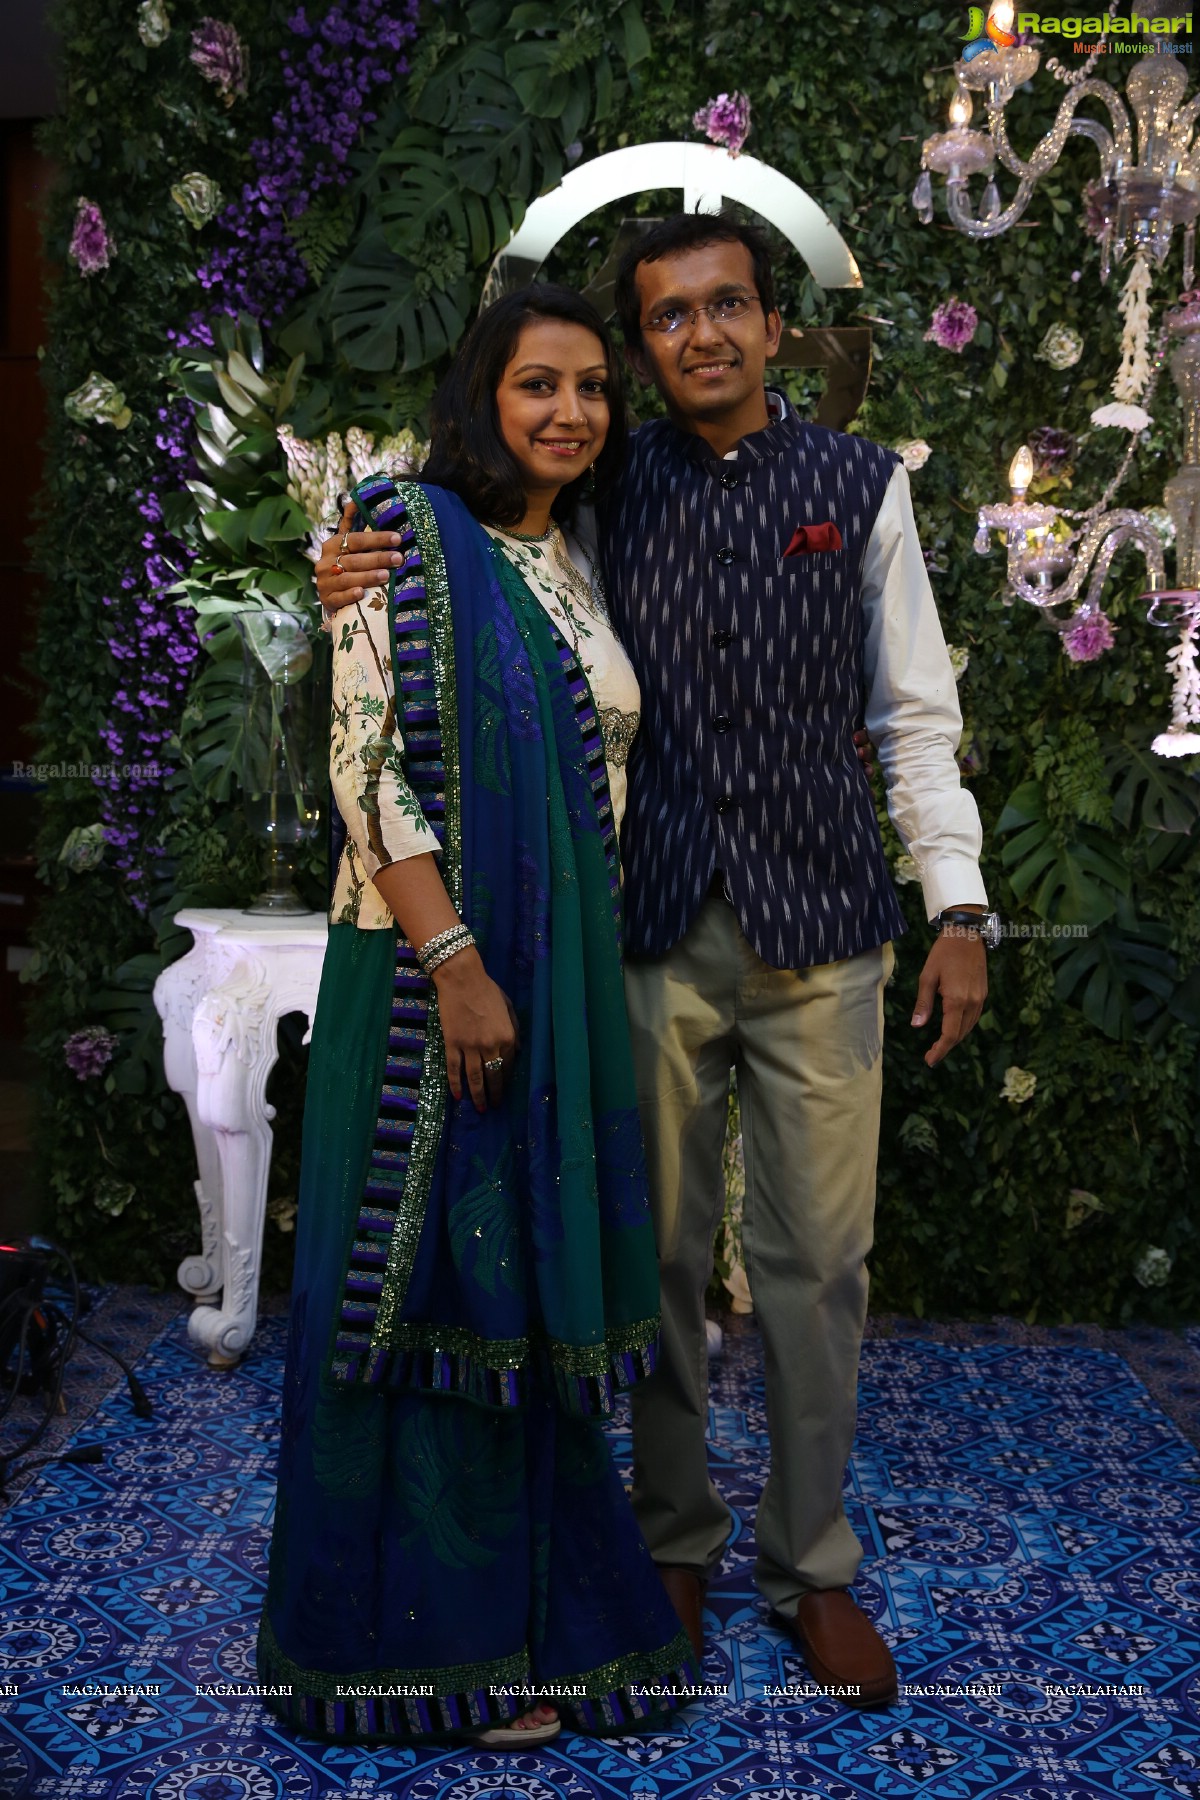 Saina Nehwal & P Kashyap's Celeb-Studded Wedding Reception